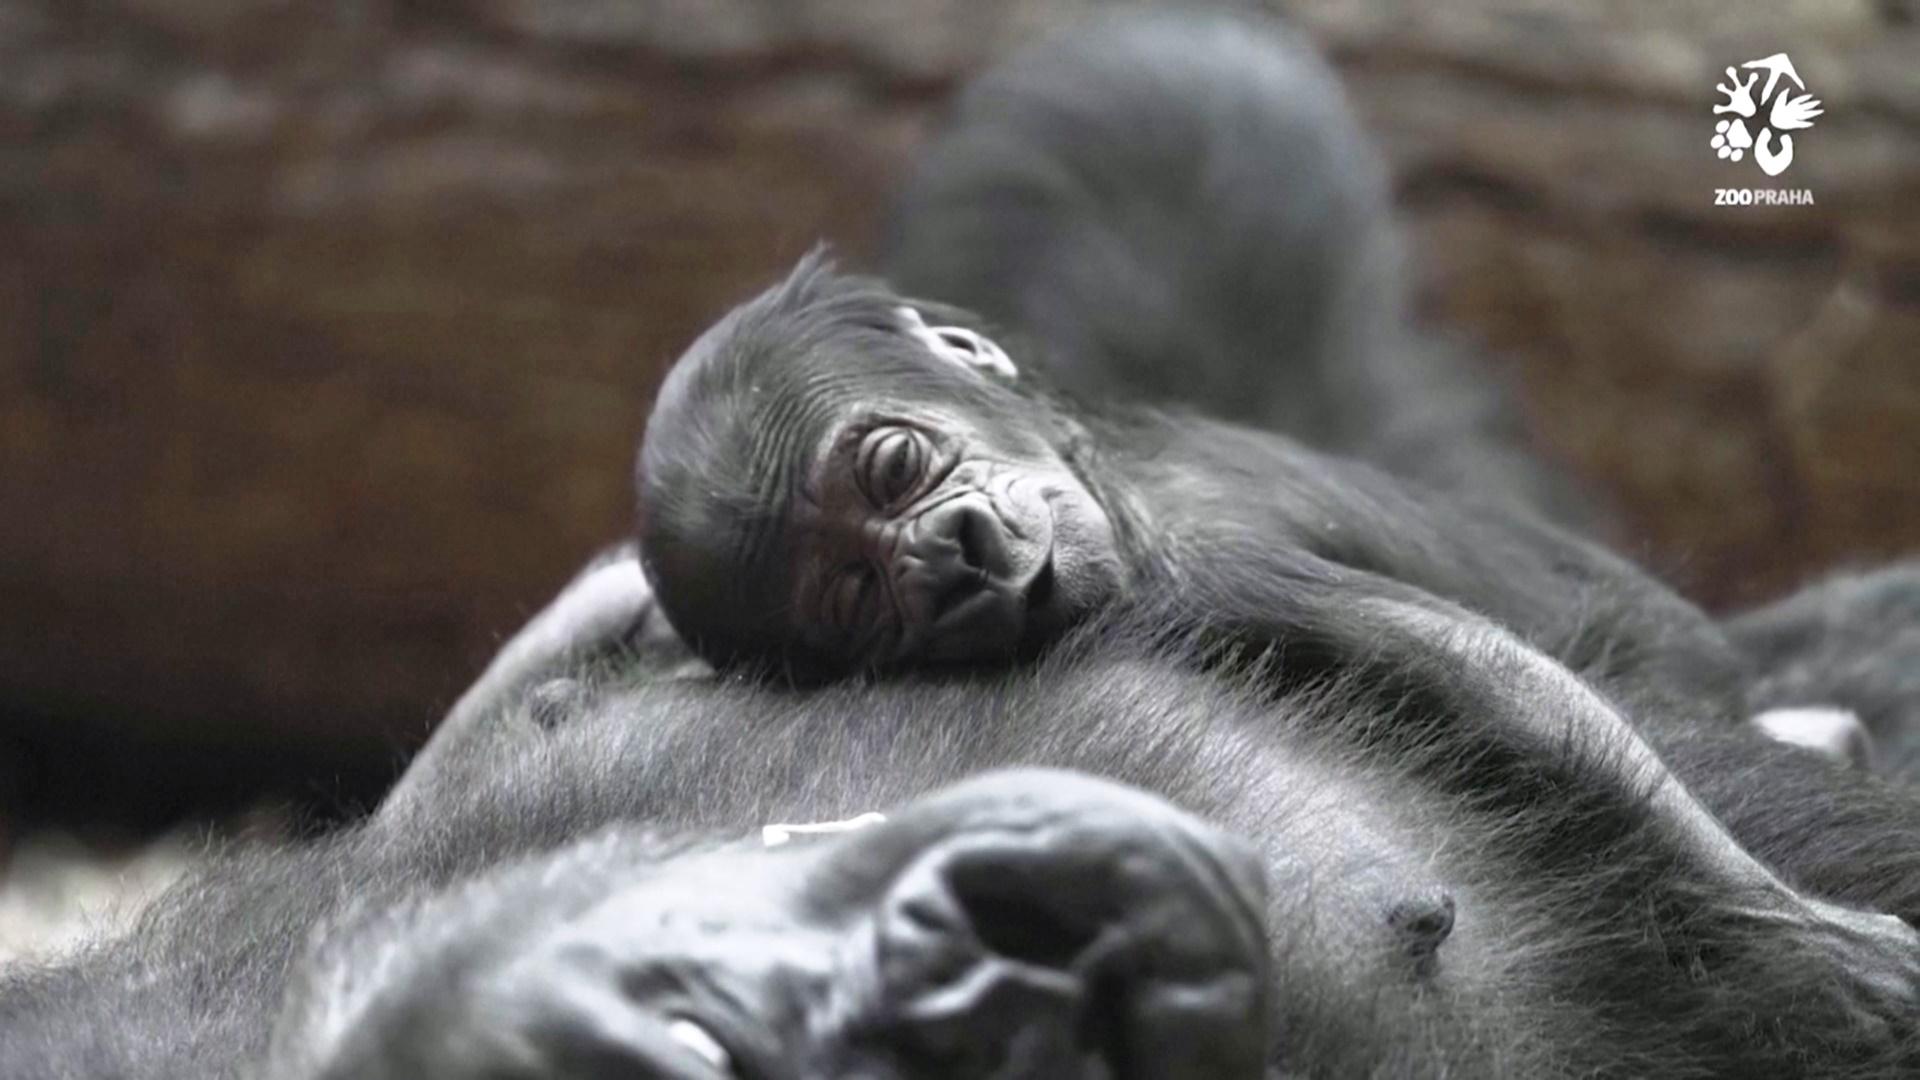 Пражский зоопарк показал детёныша редкой гориллы